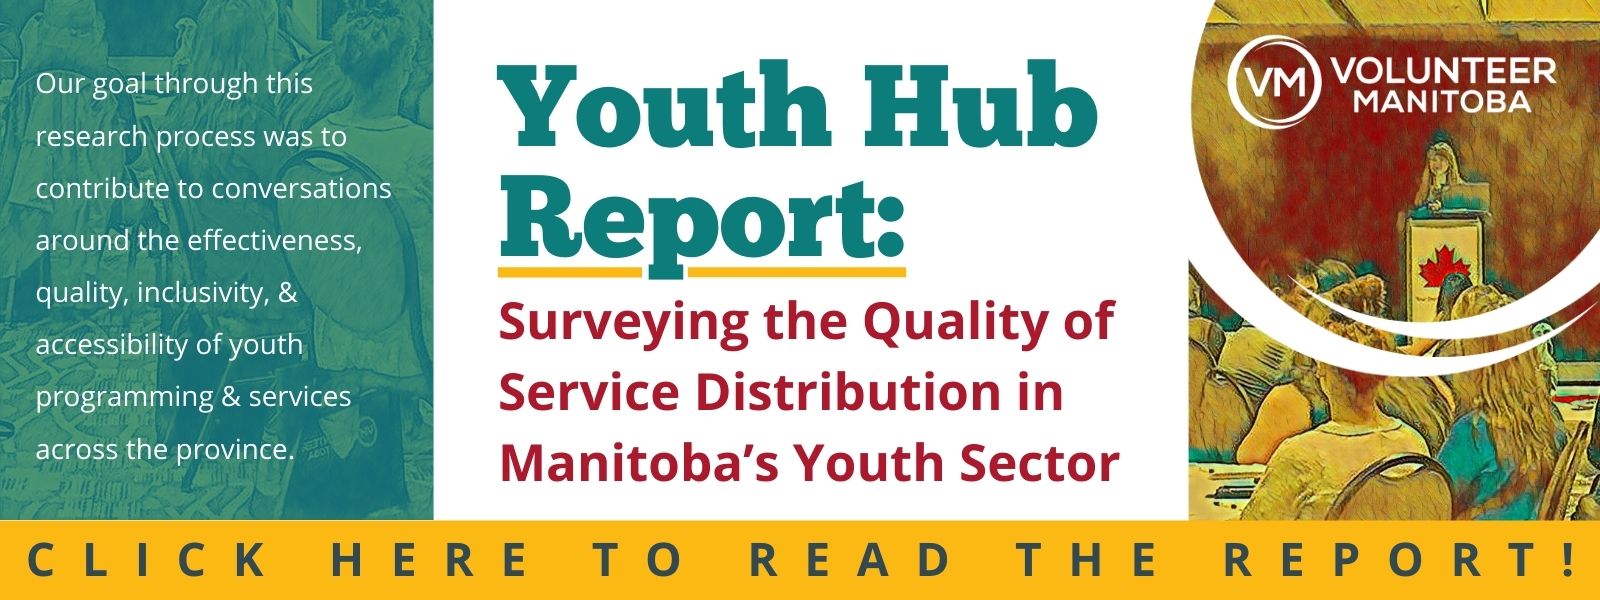 VM Youth Hub Report